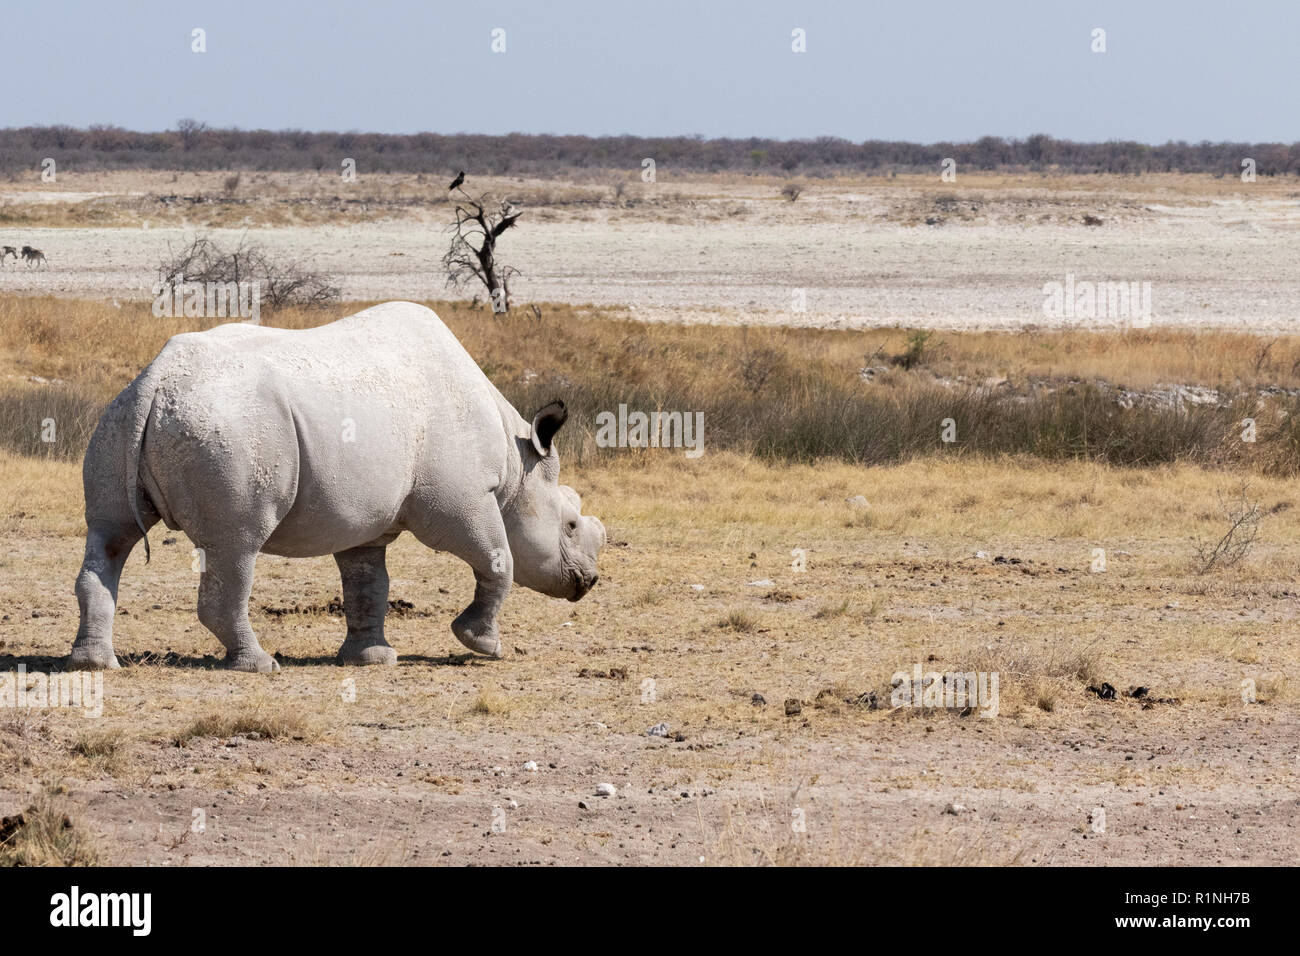 - Un adulto de especies en peligro de extinción, rinoceronte blanco Ceratotherium simum , ejemplo de animales en peligro de extinción, caminar en el Parque Nacional de Etosha, Namibia África Foto de stock